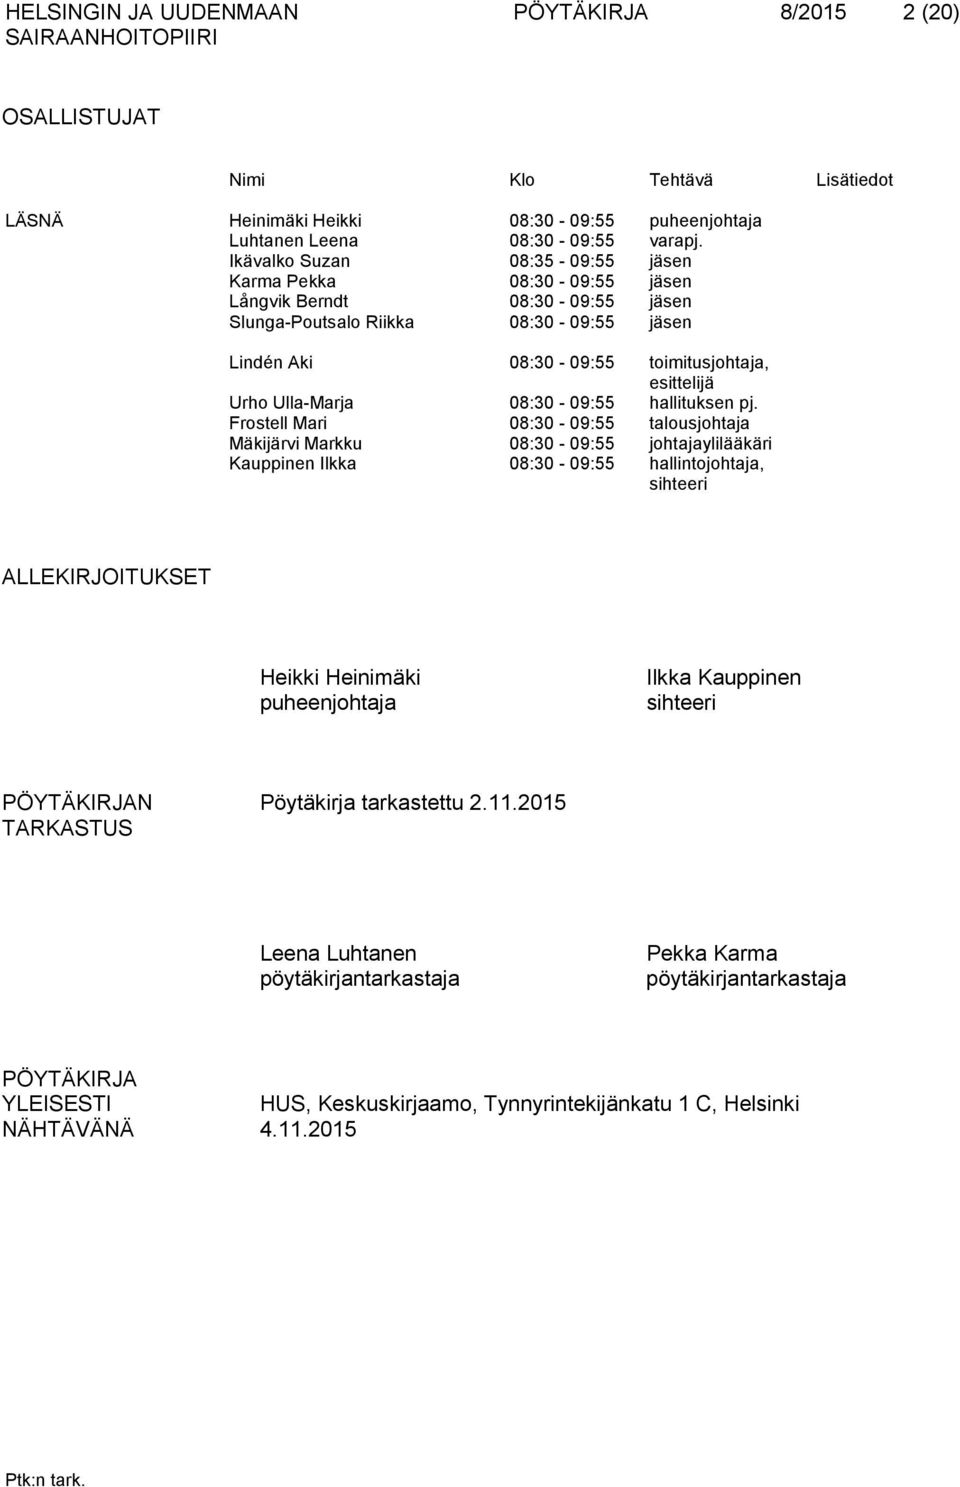 Ulla-Marja 08:30-09:55 hallituksen pj.